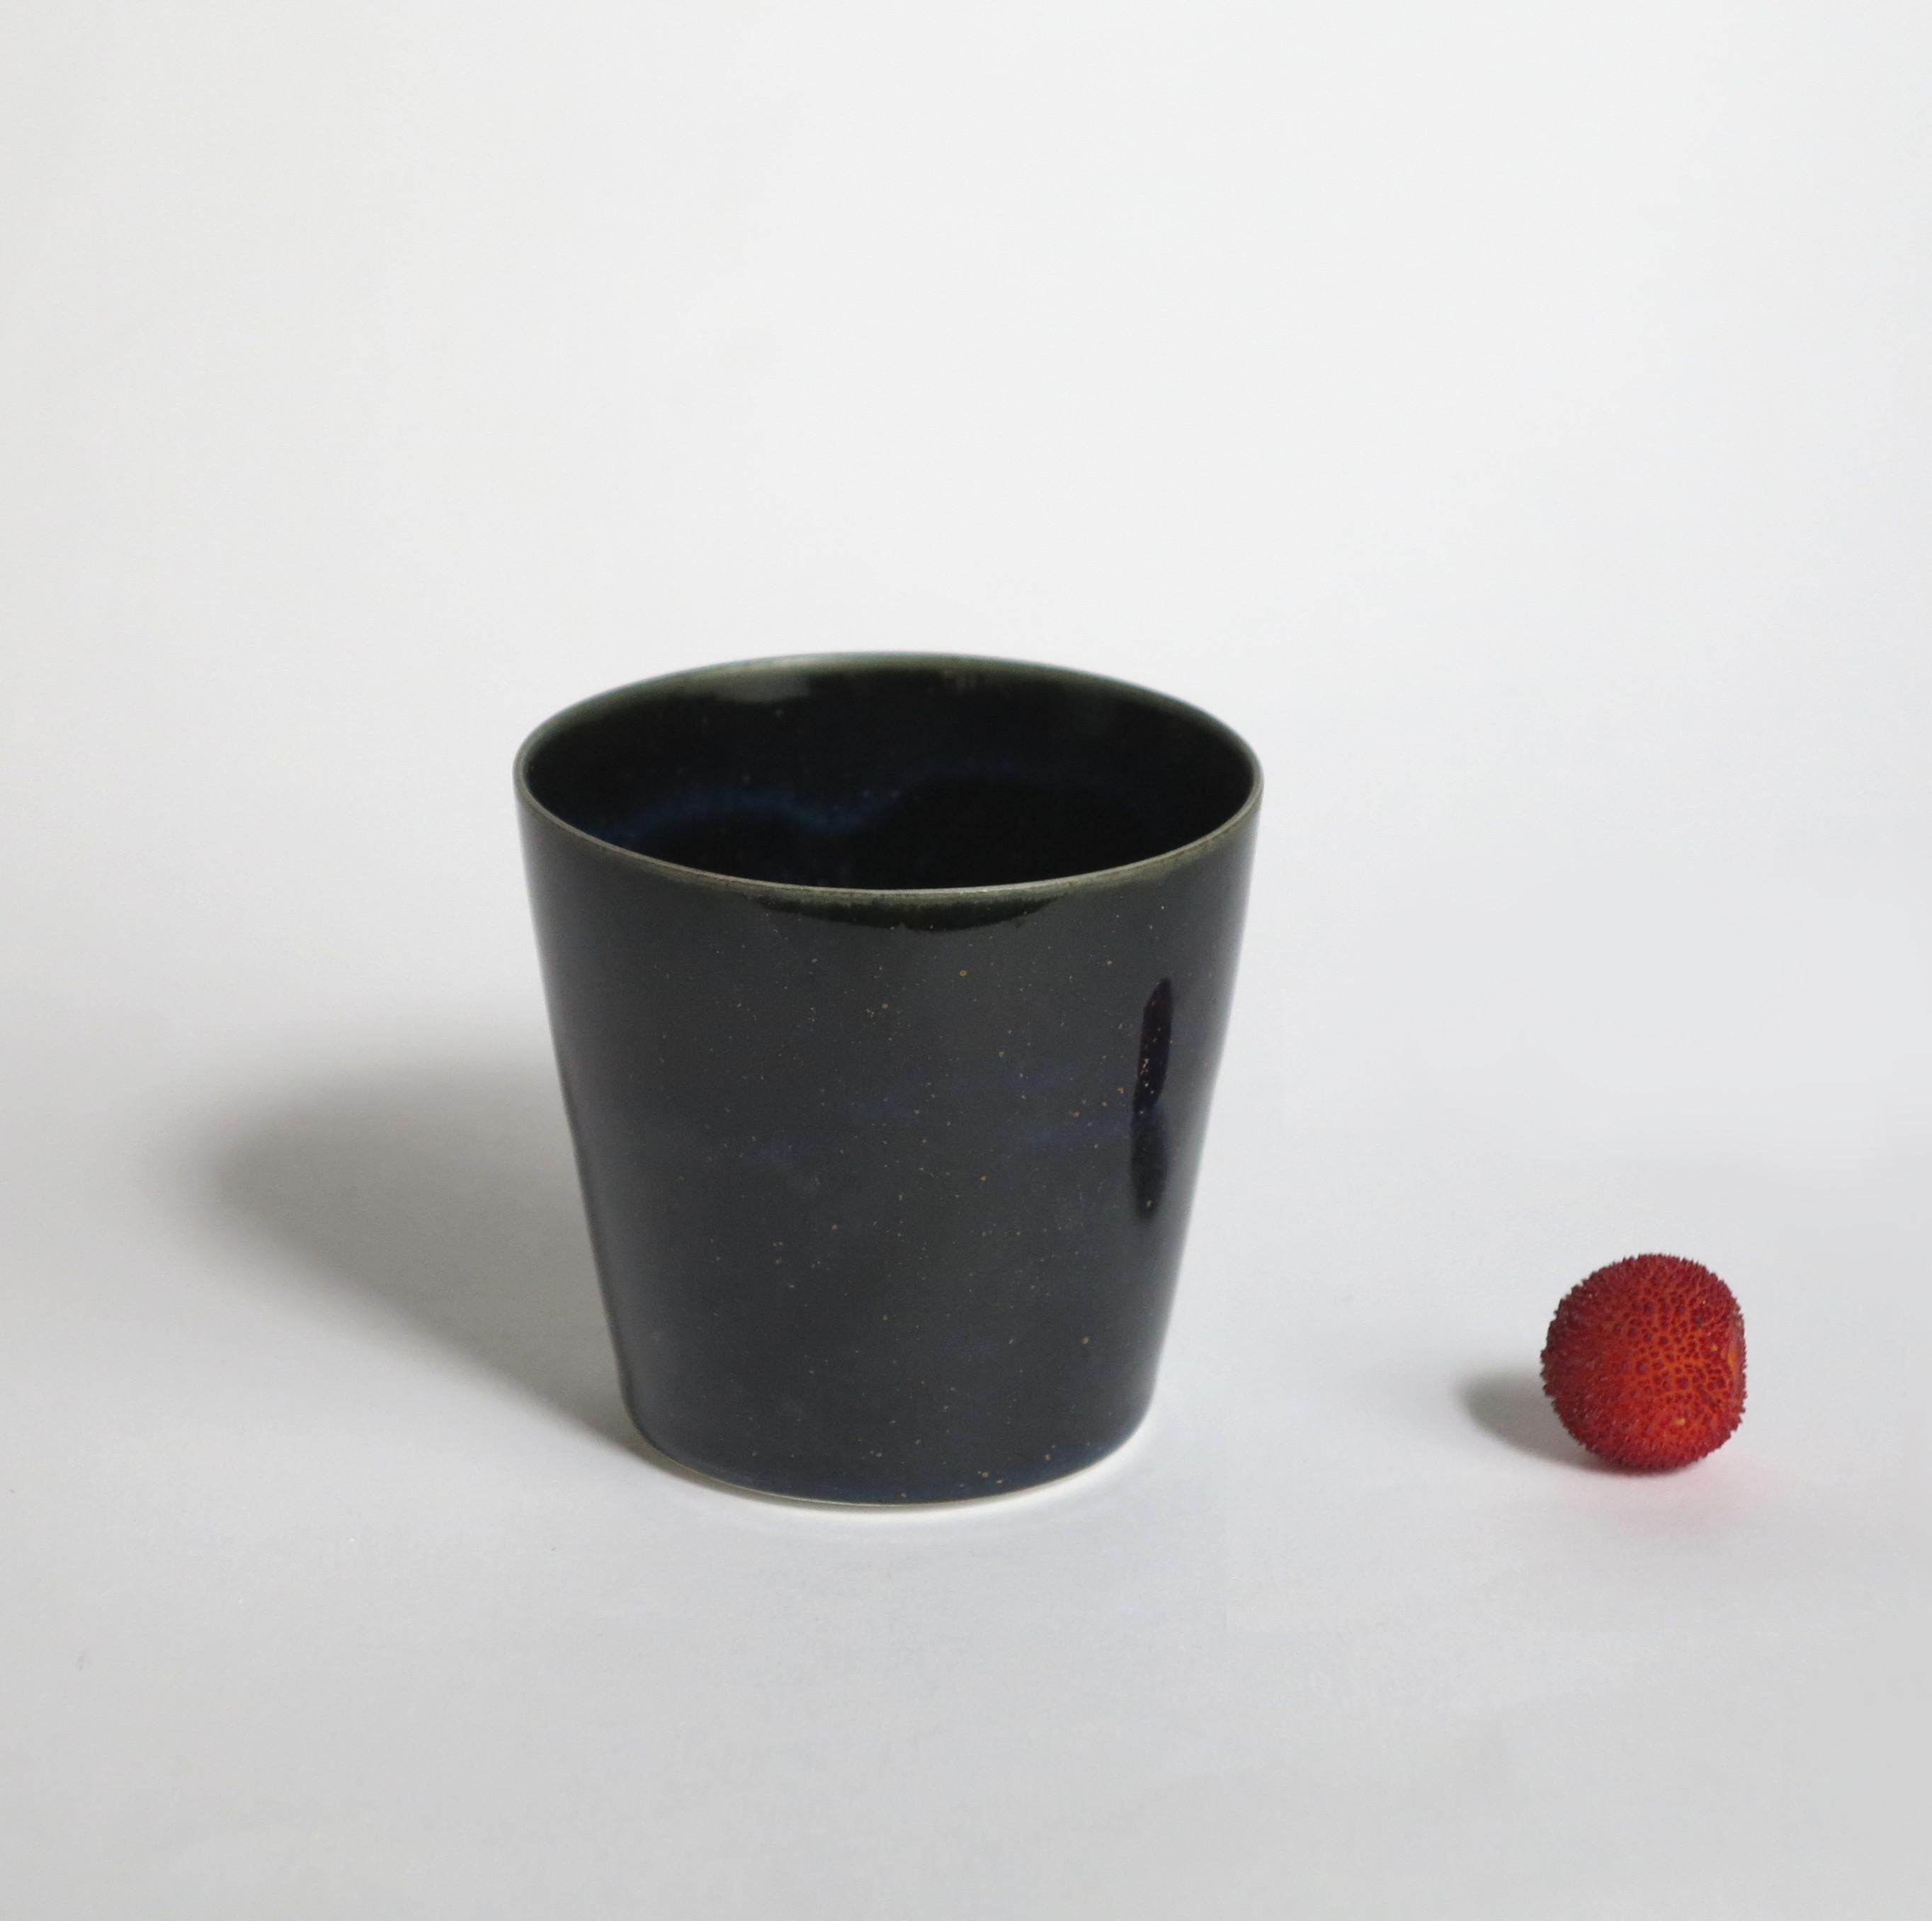 Lot de 4 tasses à café en porcelaine noire de Cica Gomez
Prix pour un lot de 4.
Dimensions : Ø 6,5 x H 6 cm : Ø 6,5 x H 6 cm
Matériaux : Porcelaine

Objets habituels. Mon travail est d'abord motivé par la recherche de la ligne. Celui qu'il